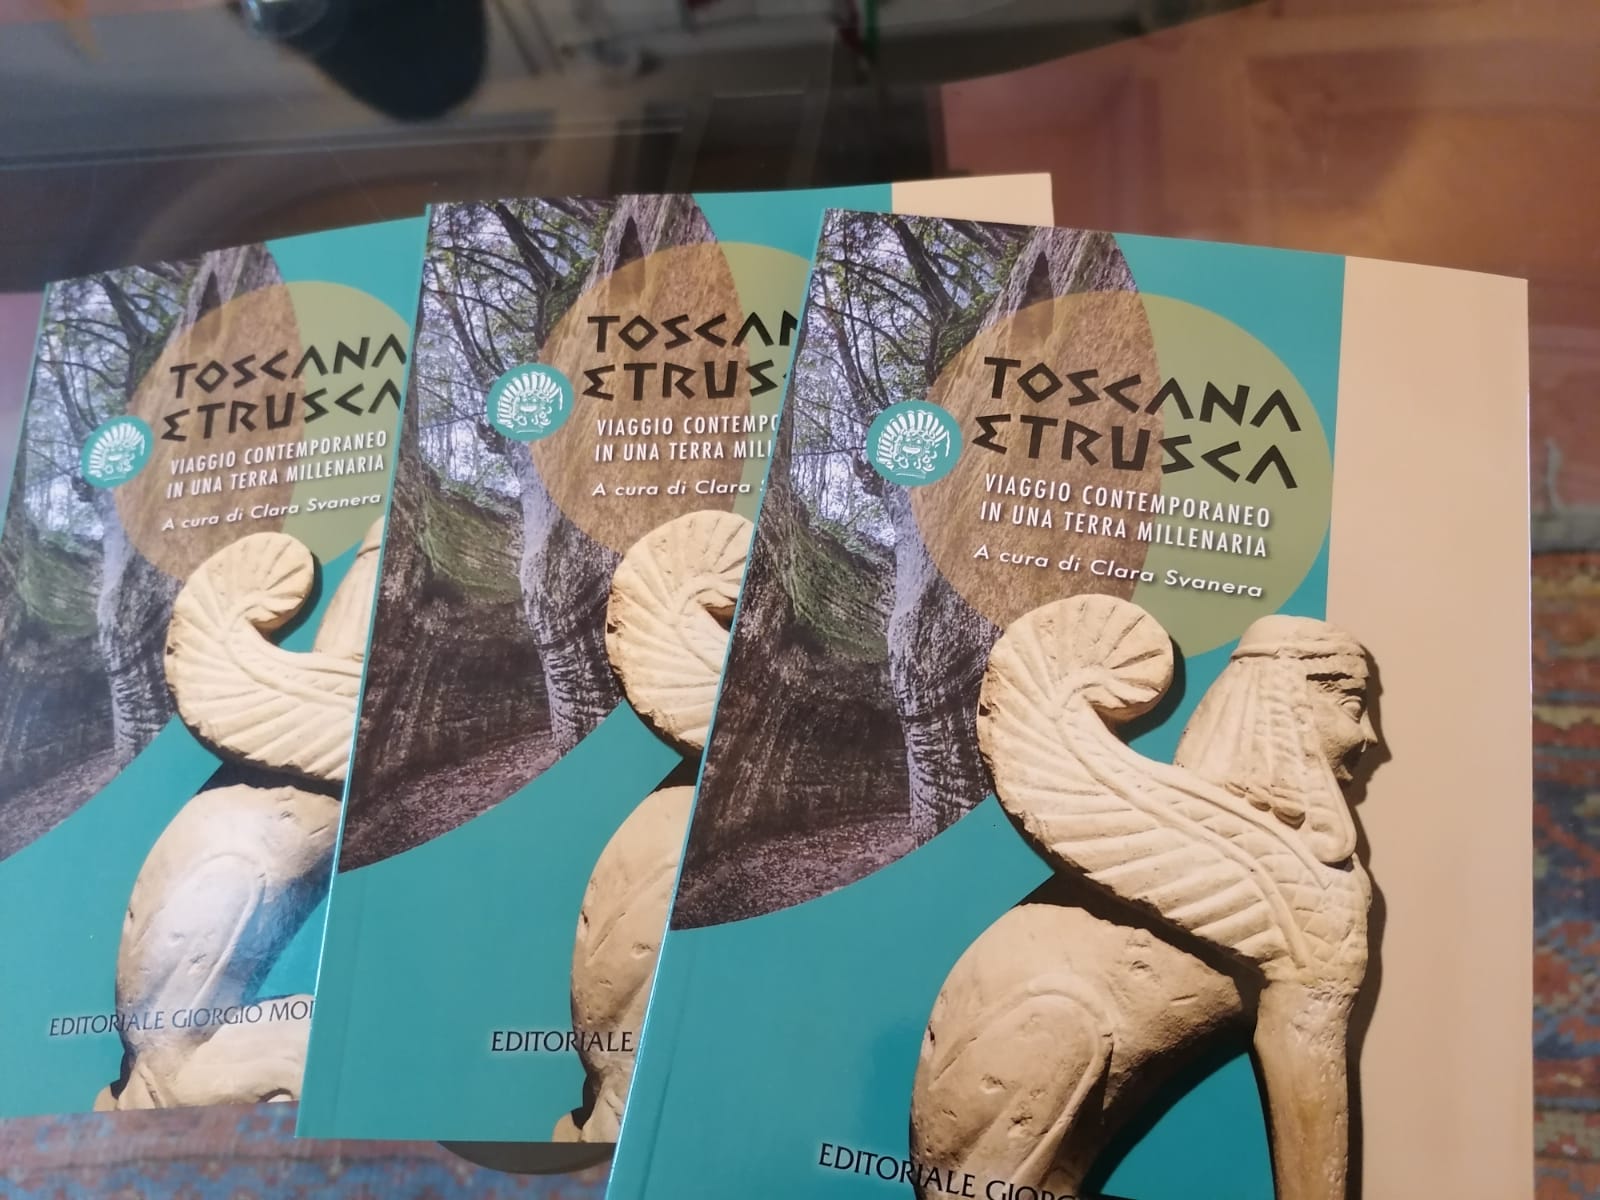 Viaggio in una civiltà millenaria. Presentata la guida “Toscana Etrusca”